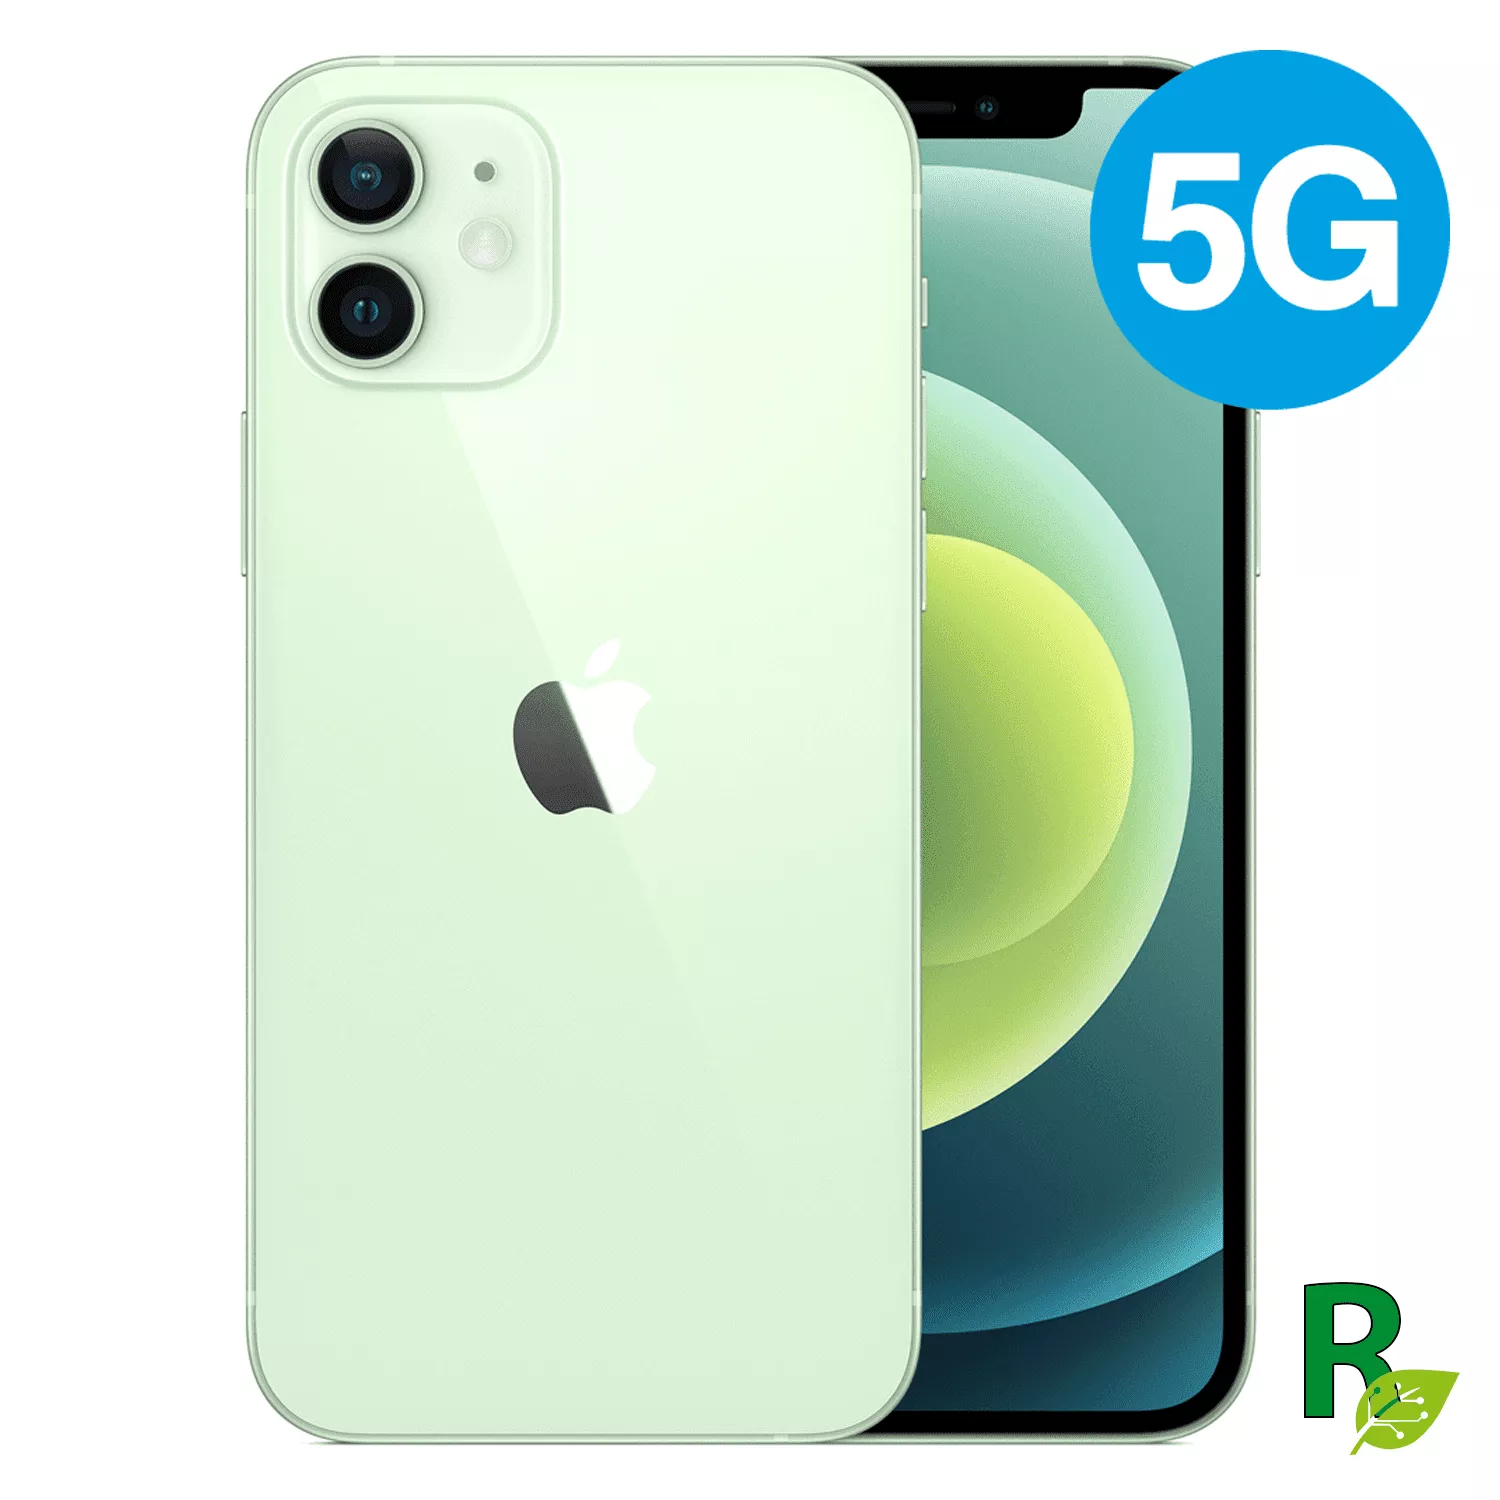 iPhone 12 64GB -Green -12GREEN64A - Grado A 1264IPH5-Reacondicionado